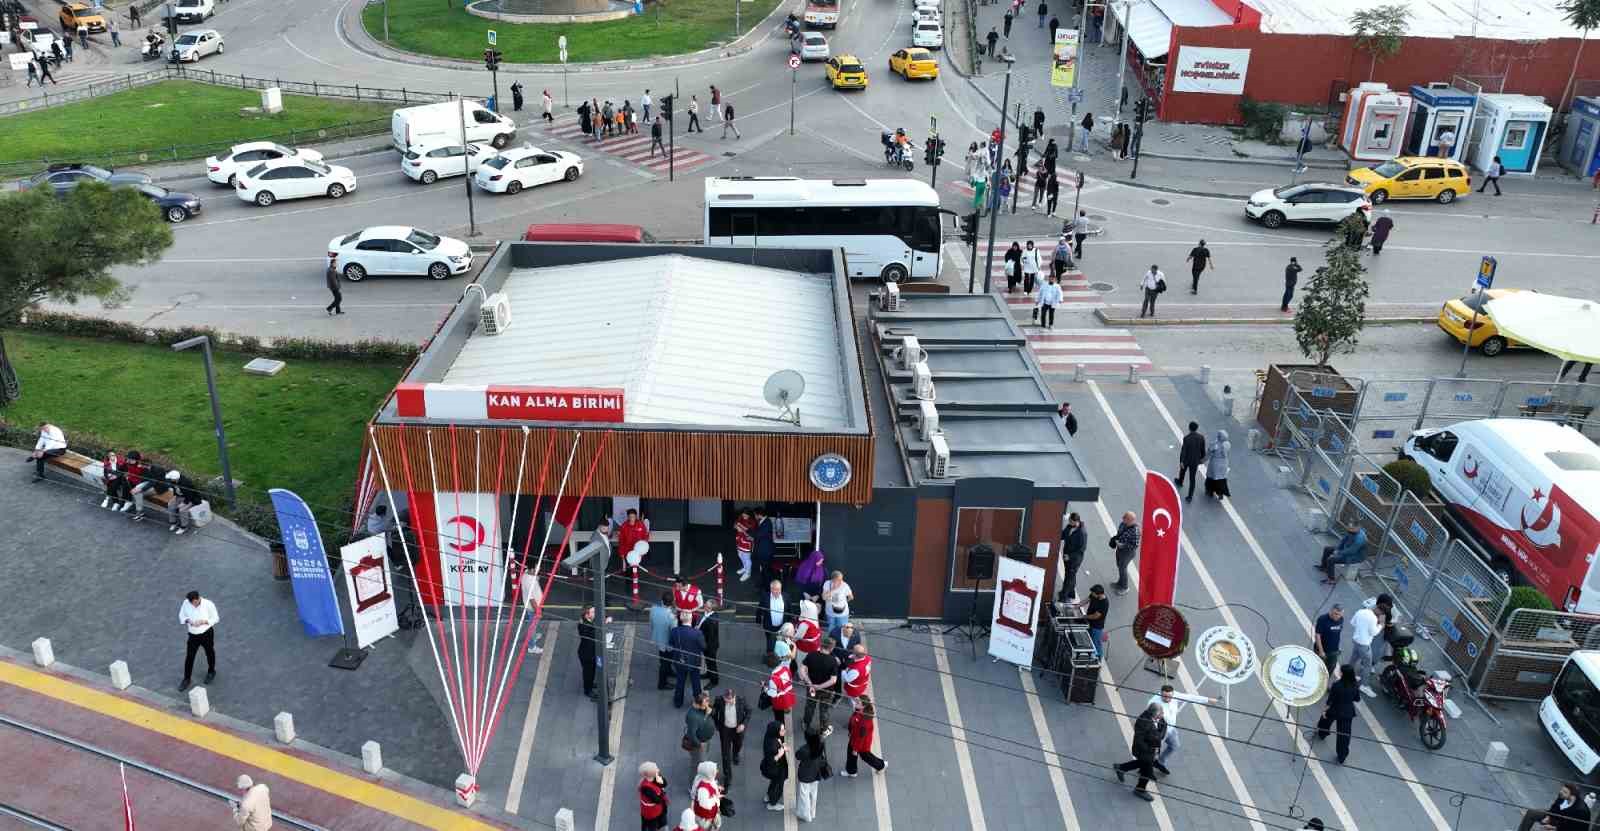 Bursa’da Kızılay’a erişim artık çok daha kolay